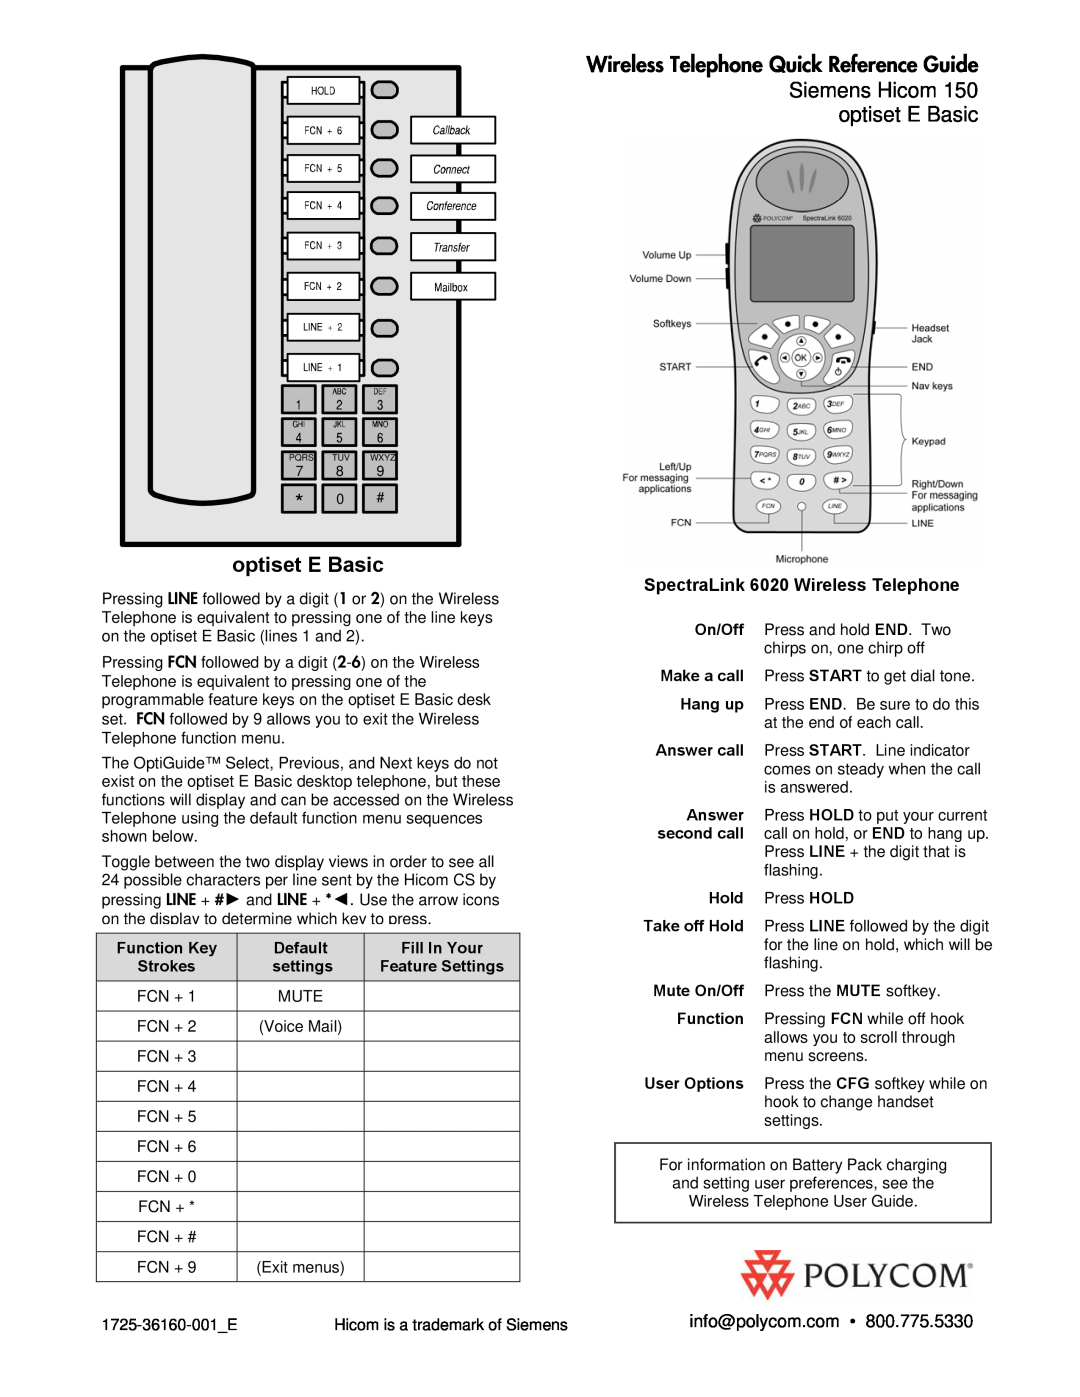 Polycom 150 manual optiset E Basic, Wireless Telephone Quick Reference Guide Siemens Hicom, info@polycom.com, Function Key 